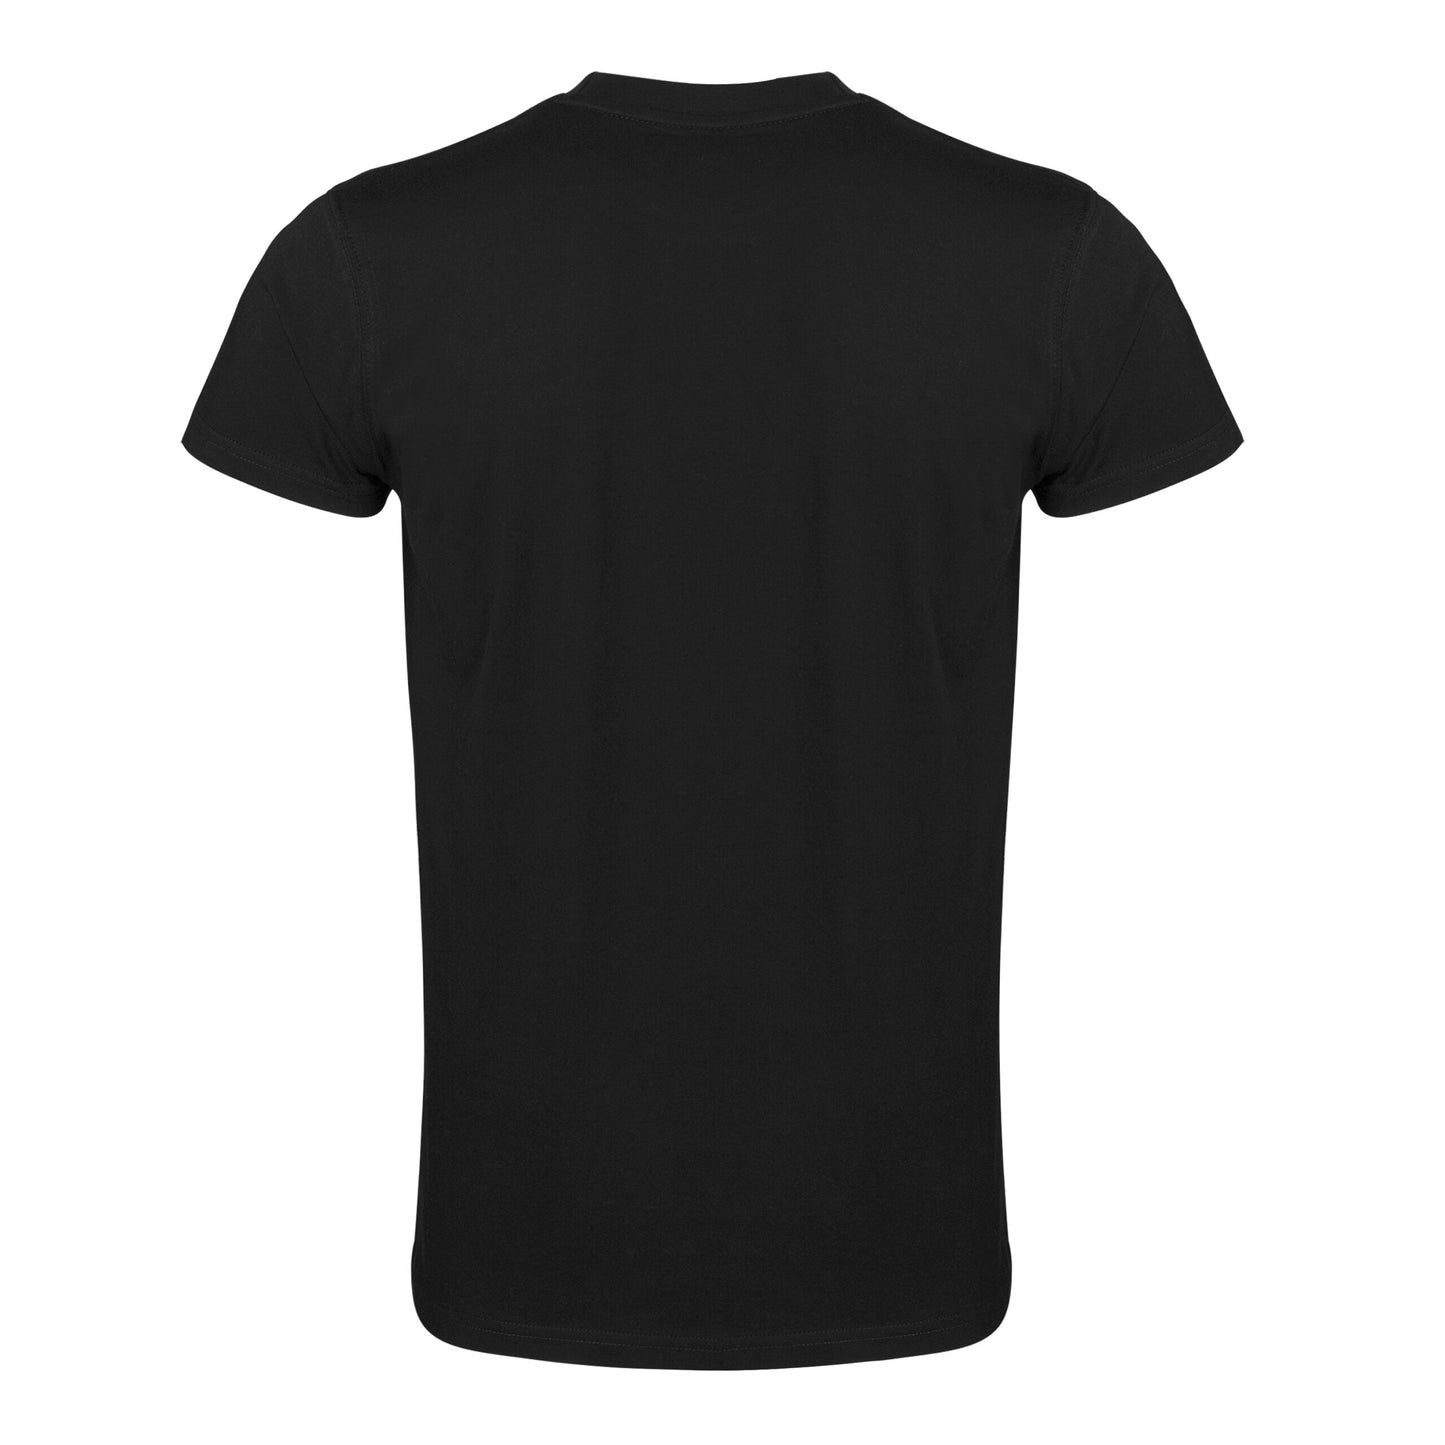 Clts21v Adidas Bjj Jiu Jitsu T Shirt Black 04